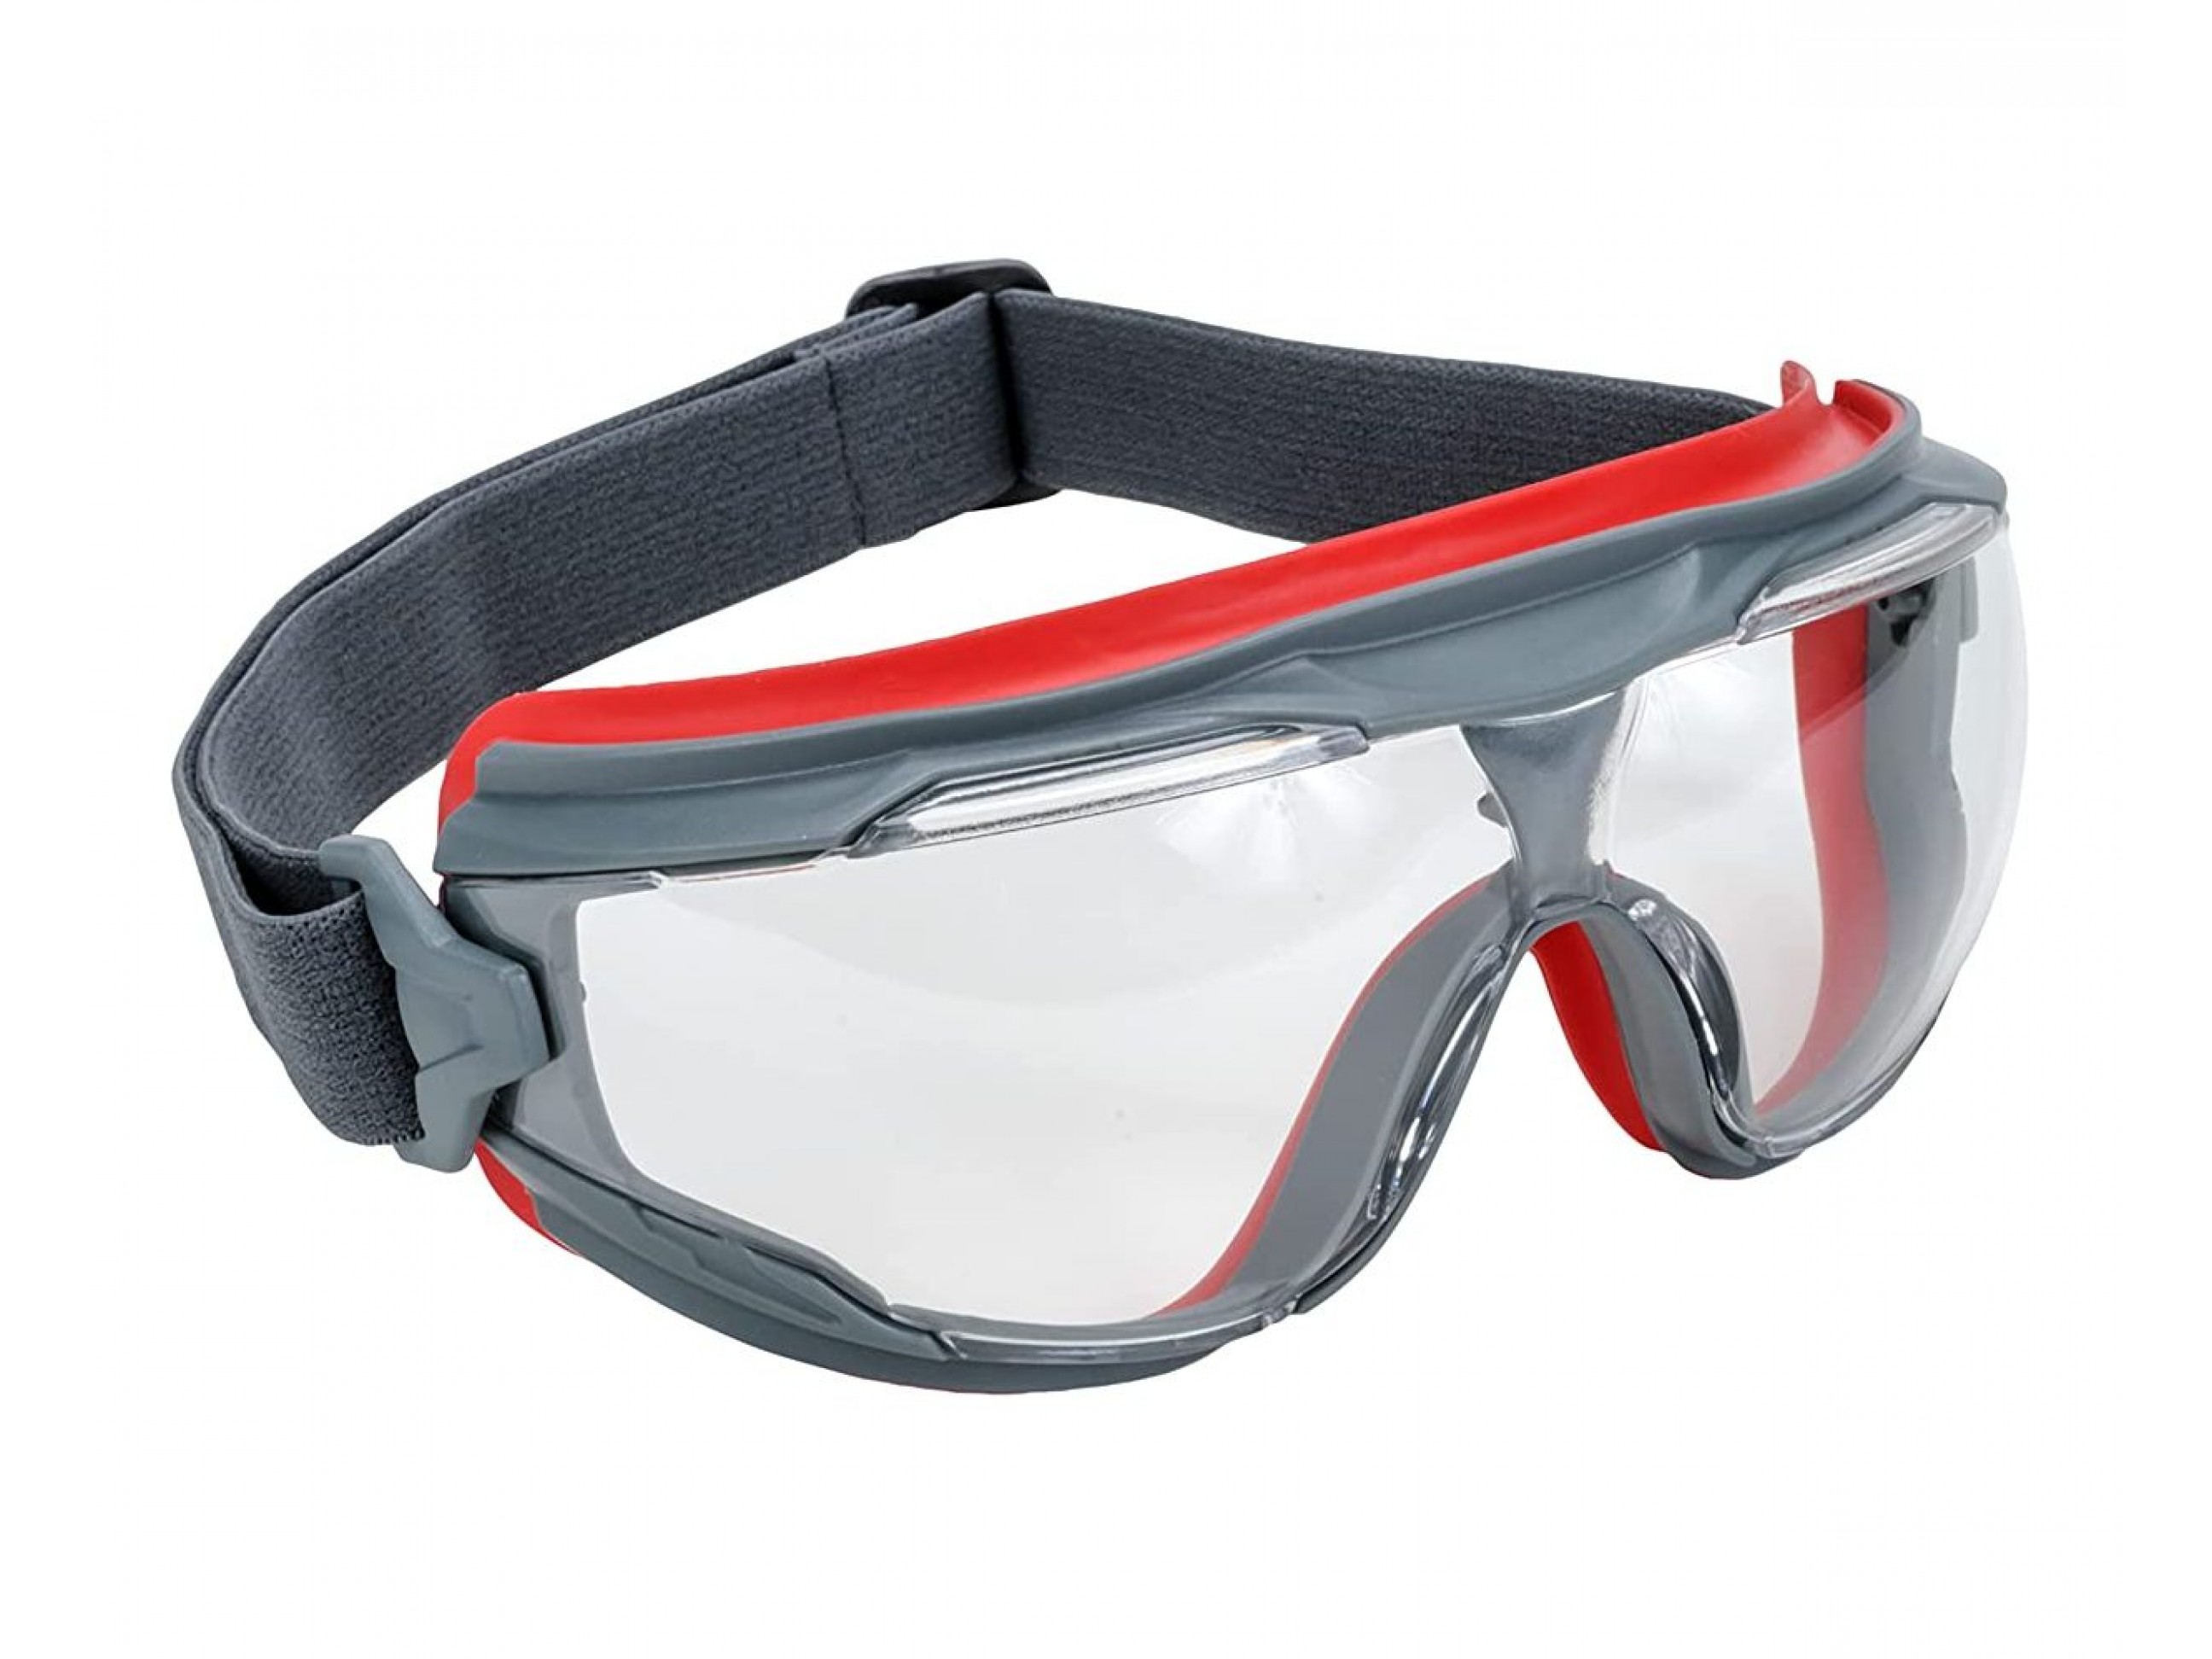 Лучшие защитные очки. Очки защитные 3м gg501. Очки защитные закрытые 3m™ gg501 из поликарбоната модель gg501-eu. Очки 3m gg501 прозрачные закрытые. Очки 3m™ SECUREFIT™ 201 sf201af-eu.